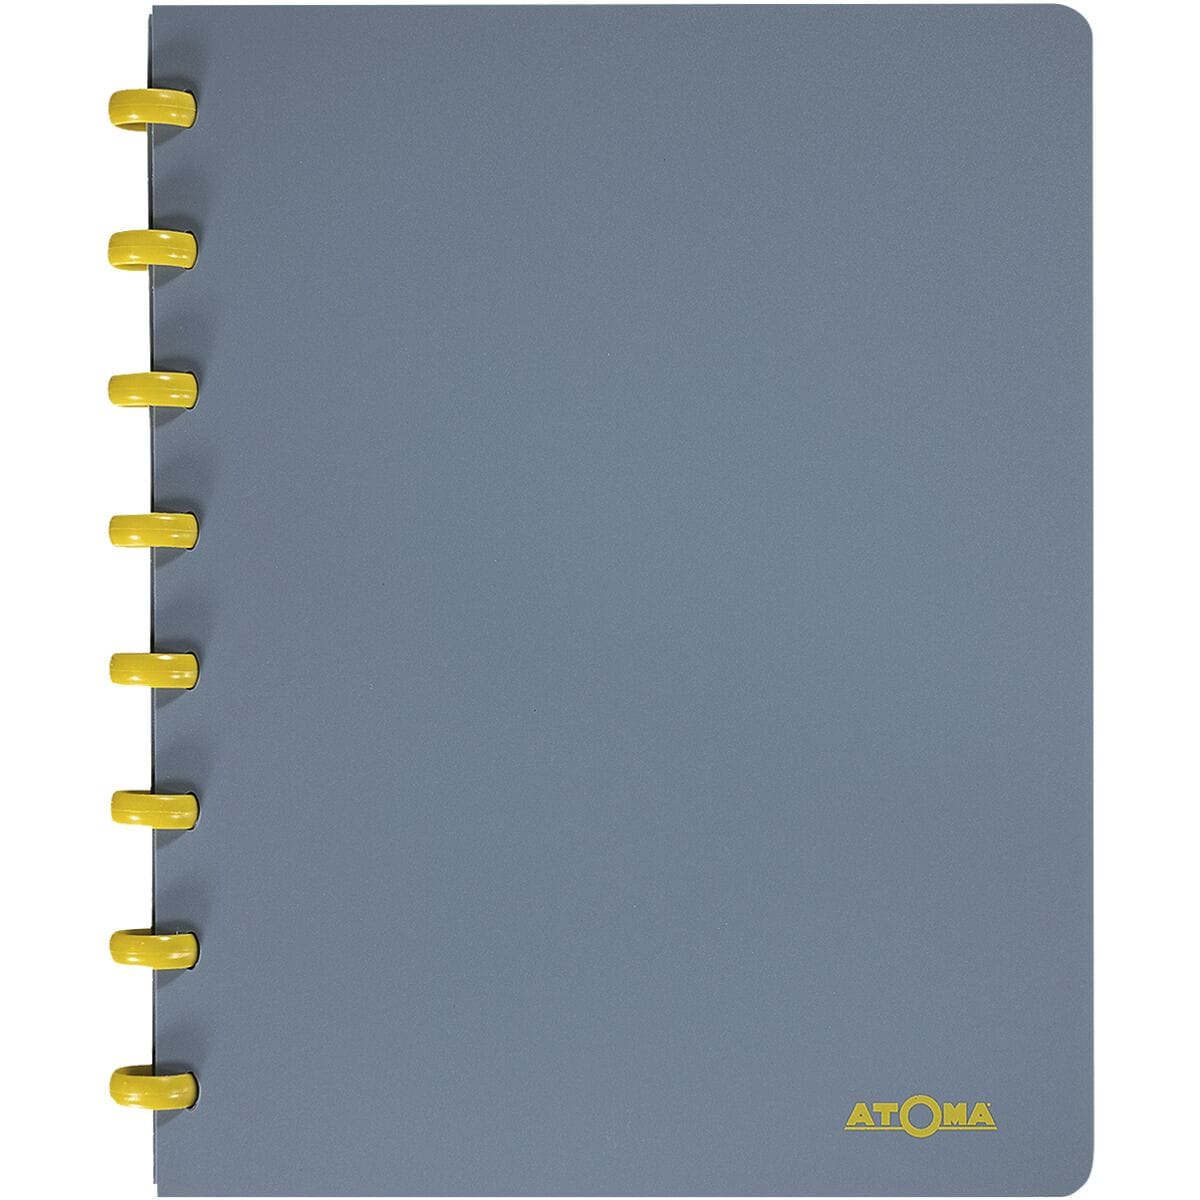 10x Atoma cahier d’cole Terra 144 pages A5  carreaux 5 x 5 mm, sans bordure, pour toutes les classes